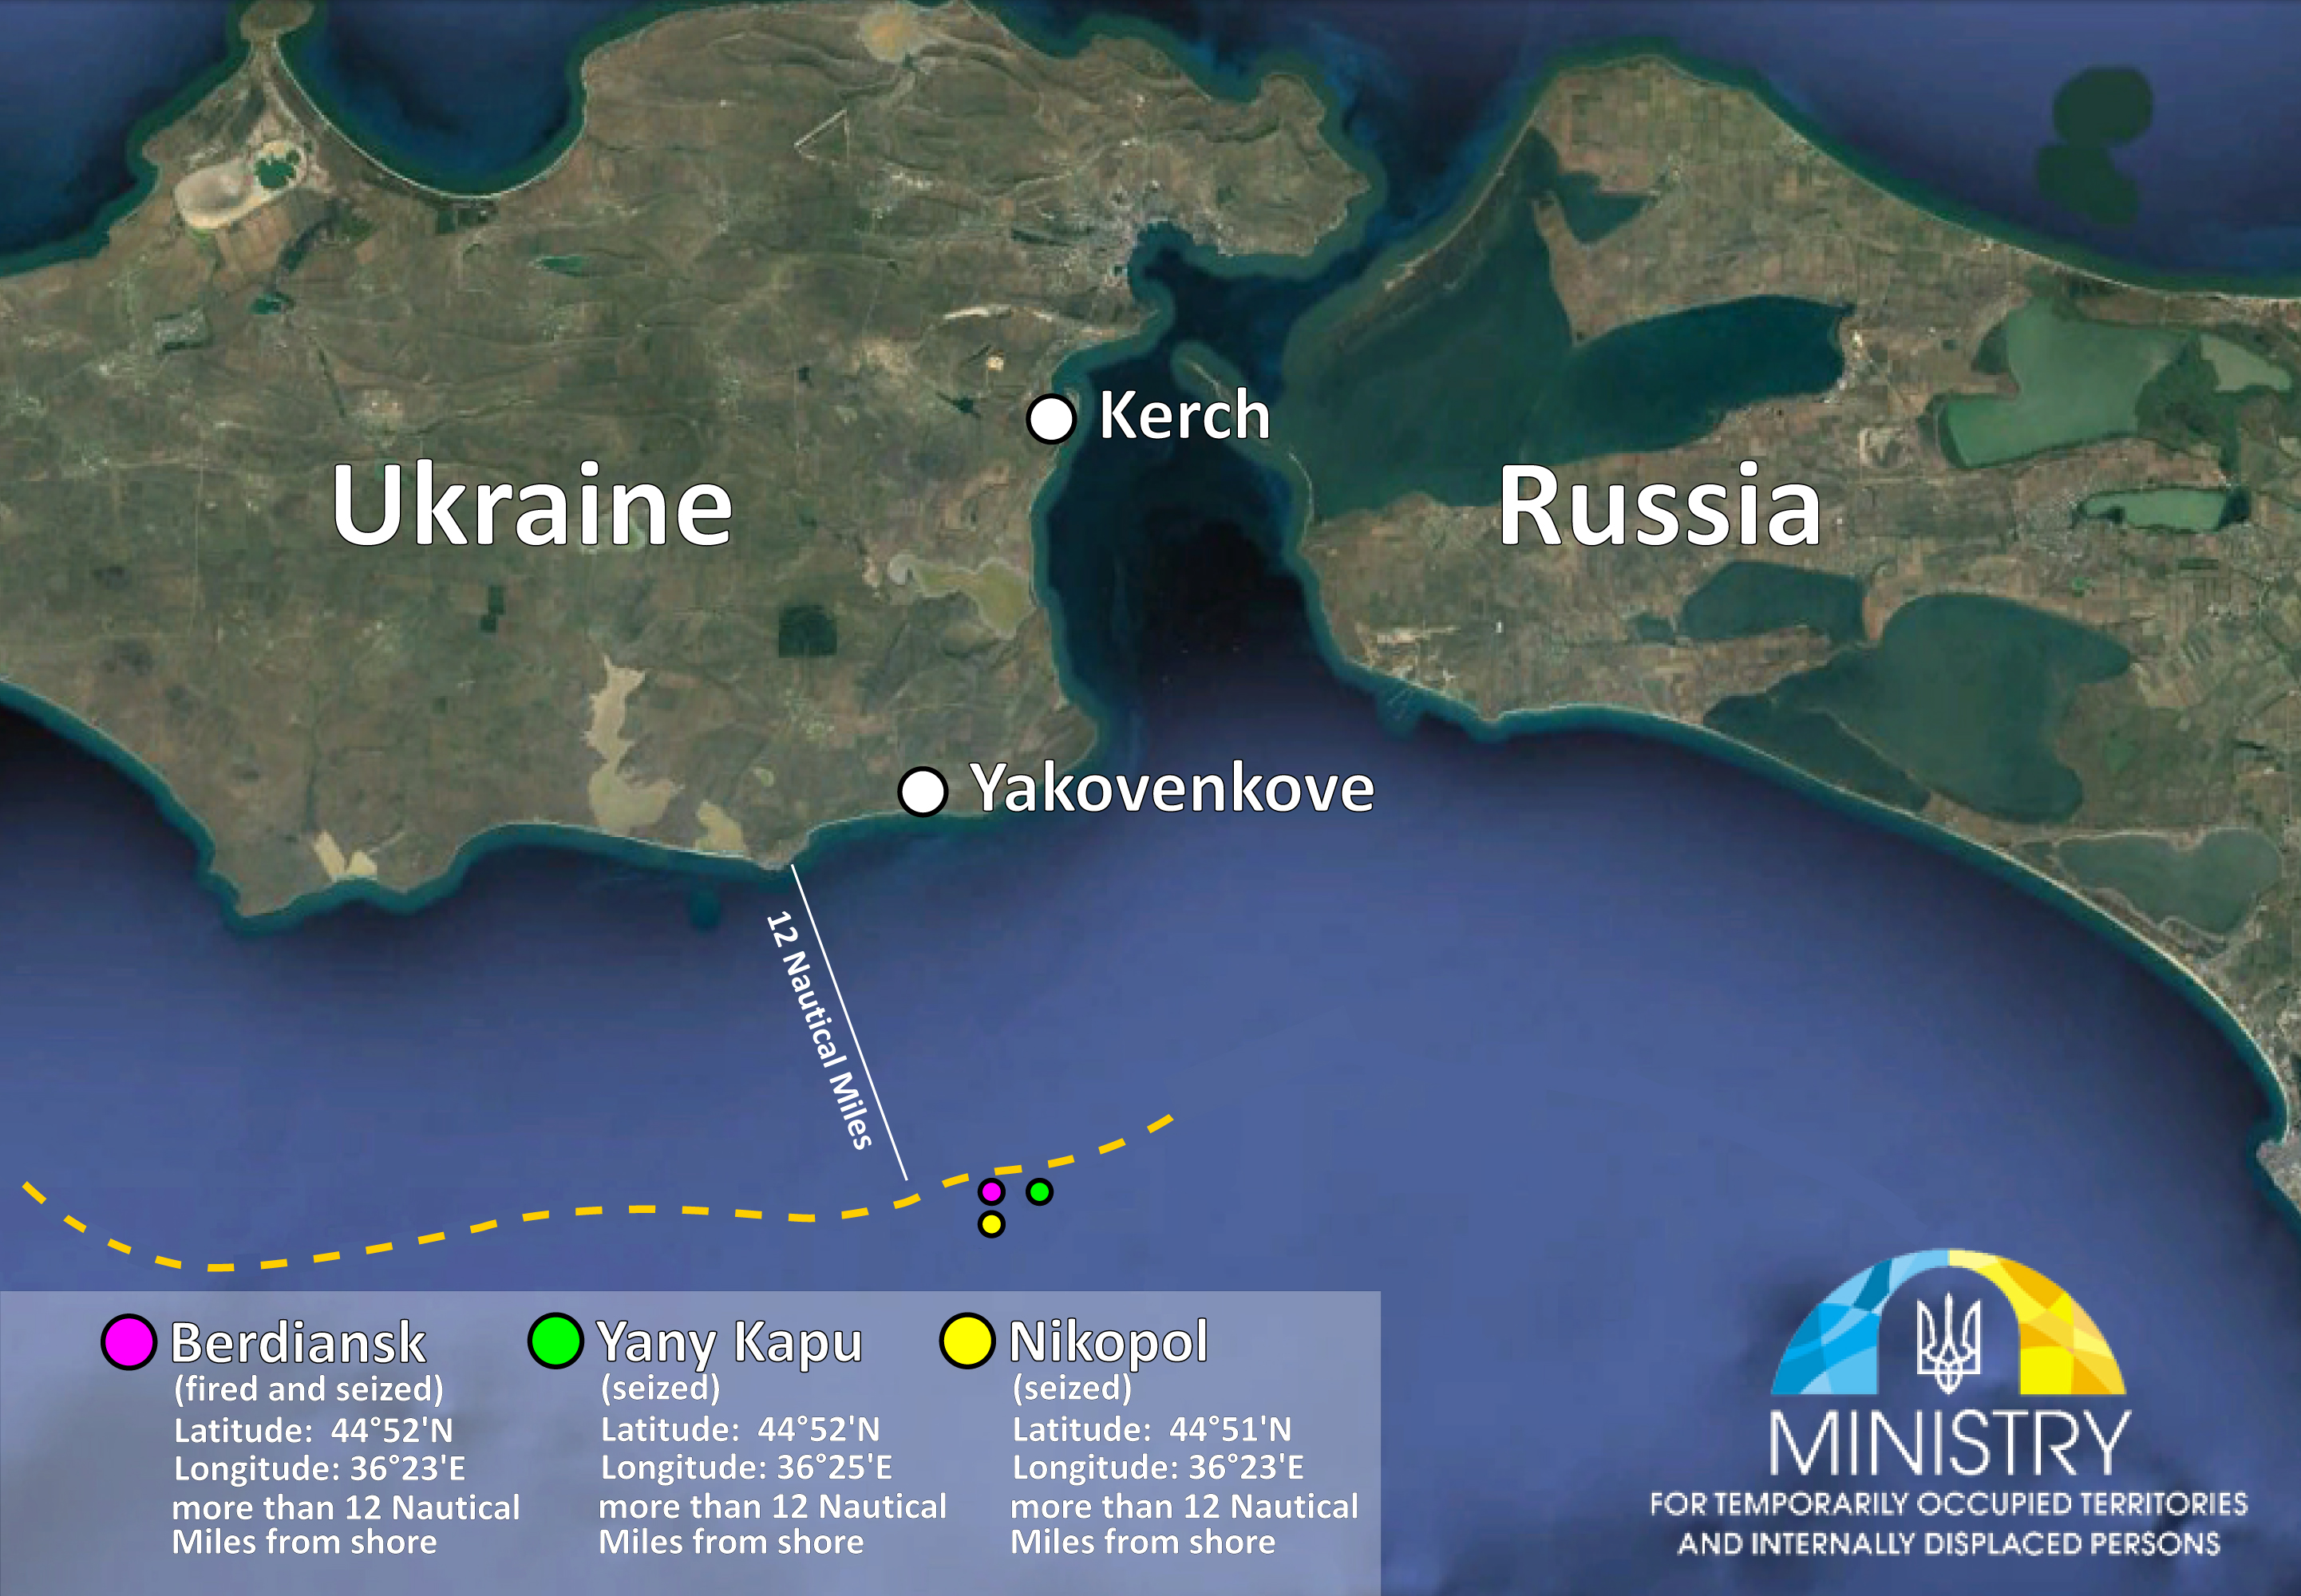 Атака на Азовском море: озвучены неопровержимые доказательства военной агрессии России - фото 161813